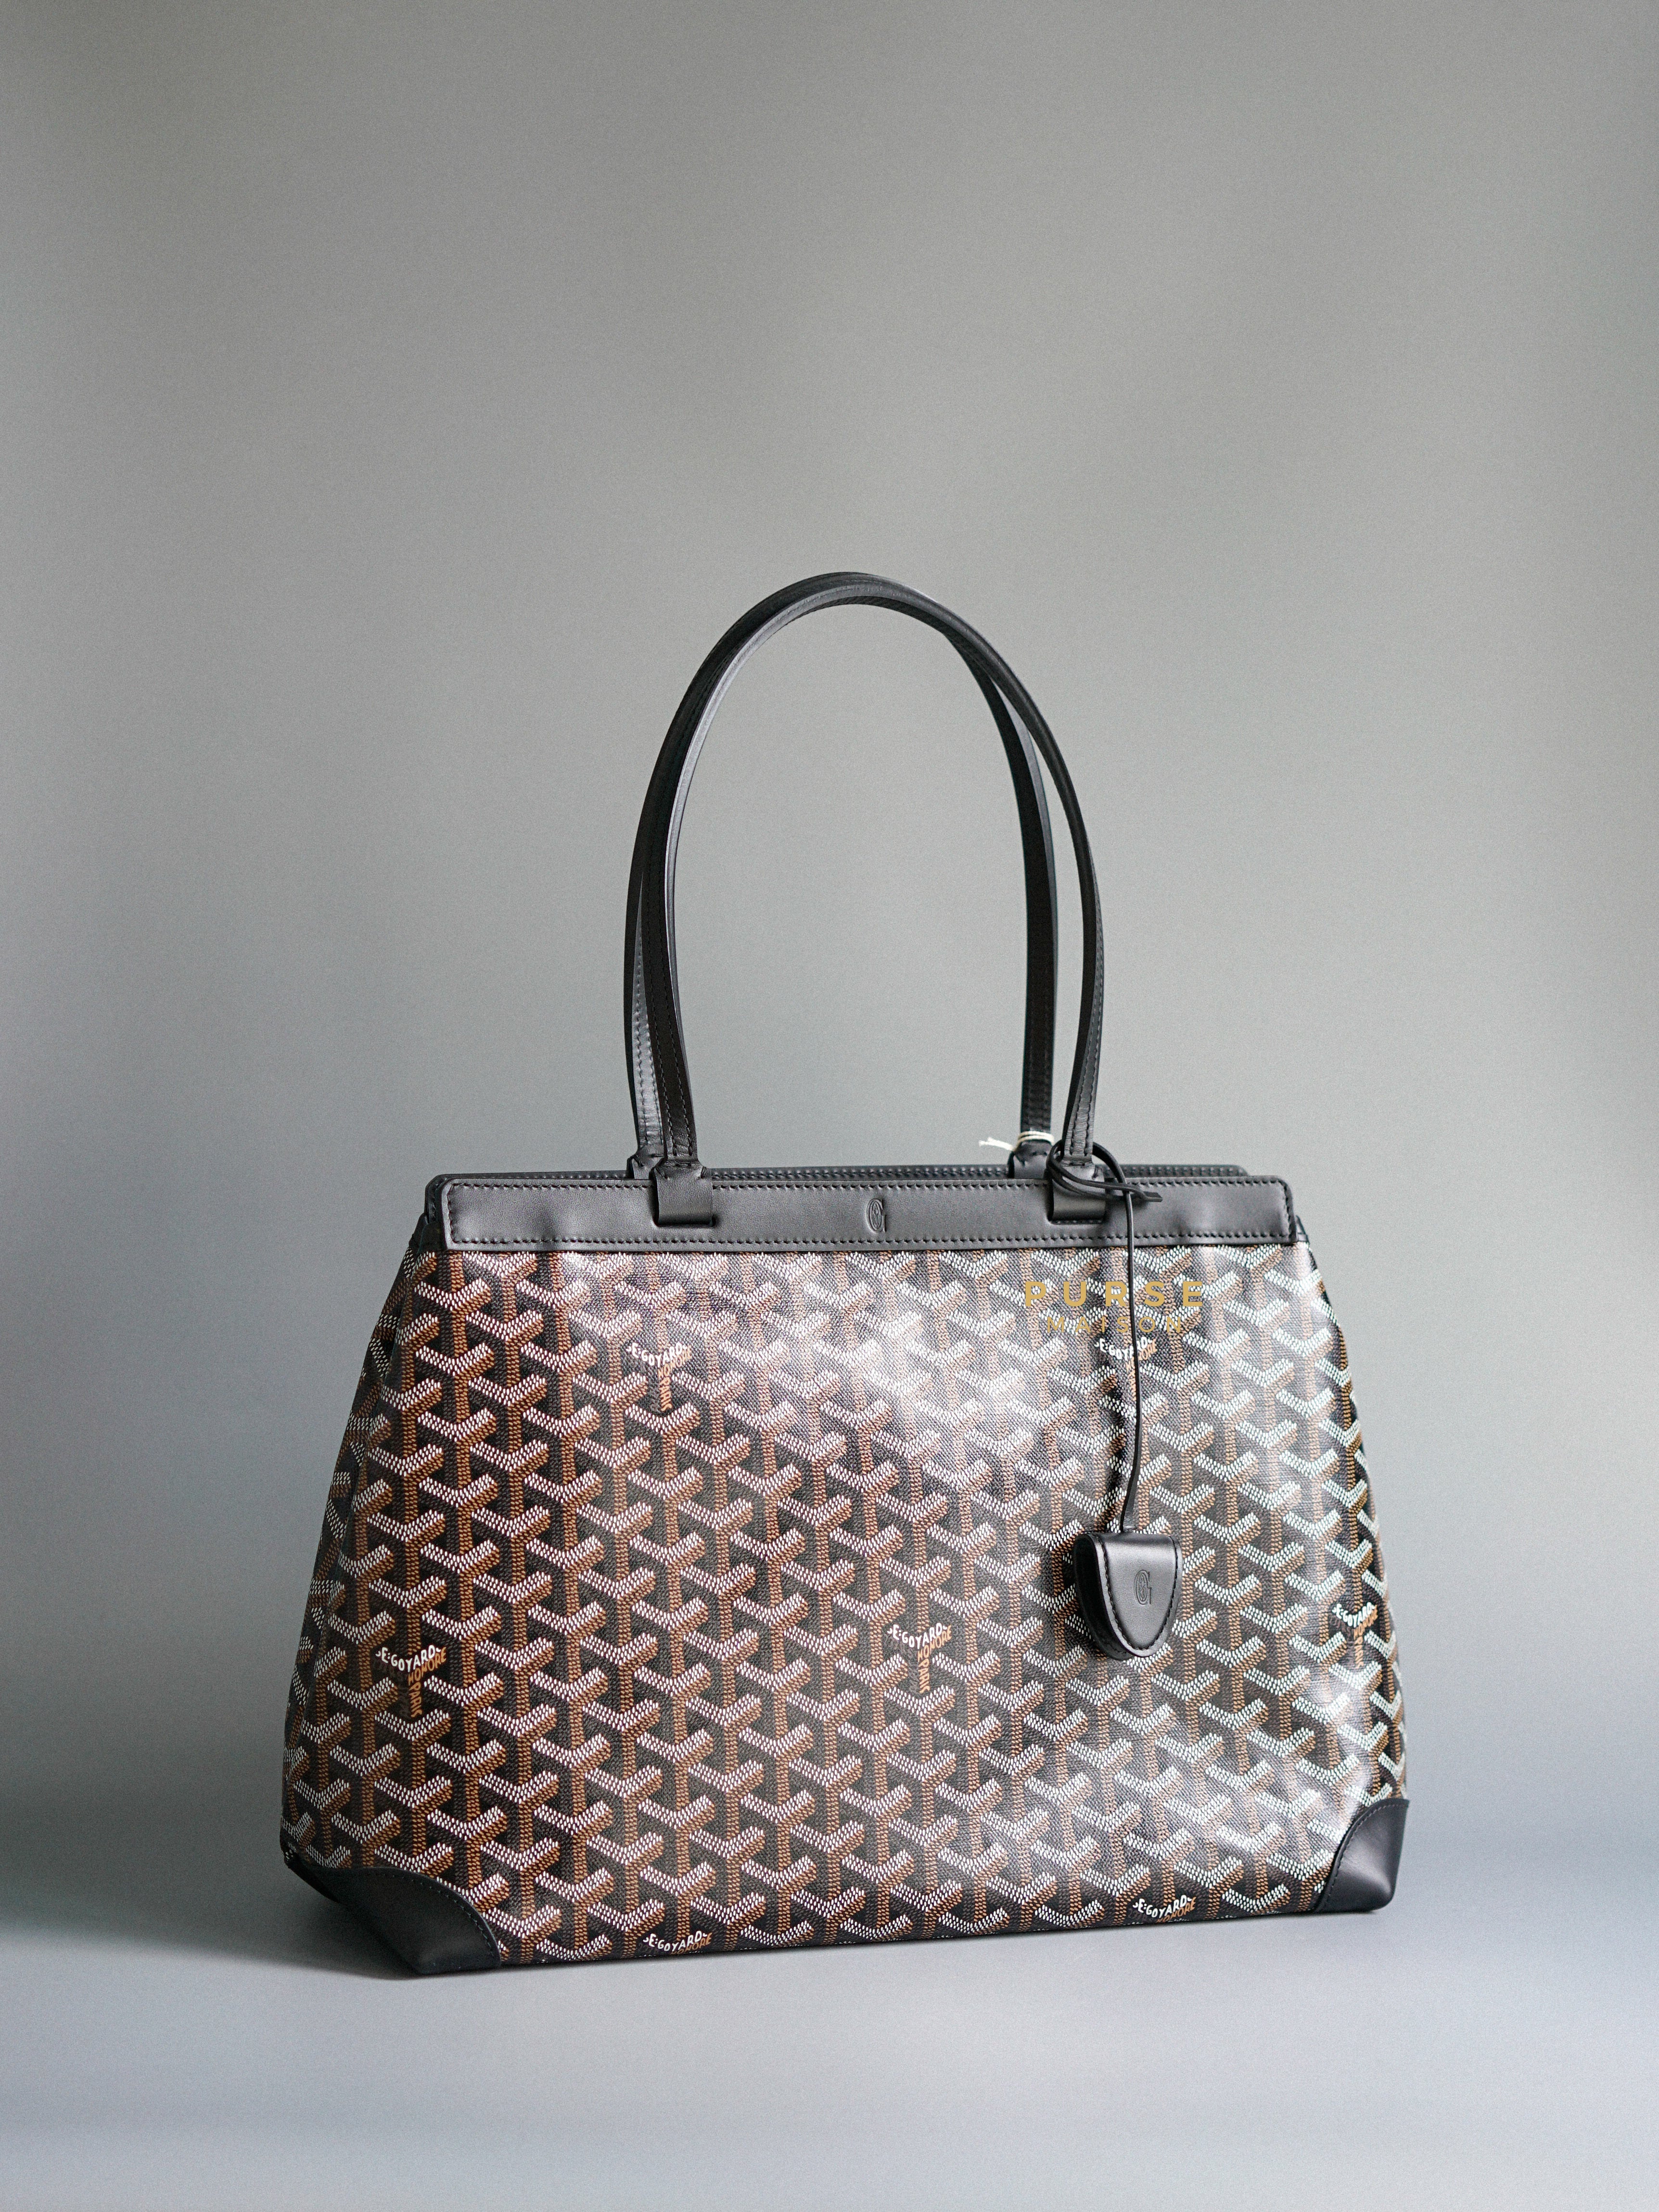 Goyard Sac Bellechasse Biaude PM Noir | Purse Maison Luxury Bags Shop